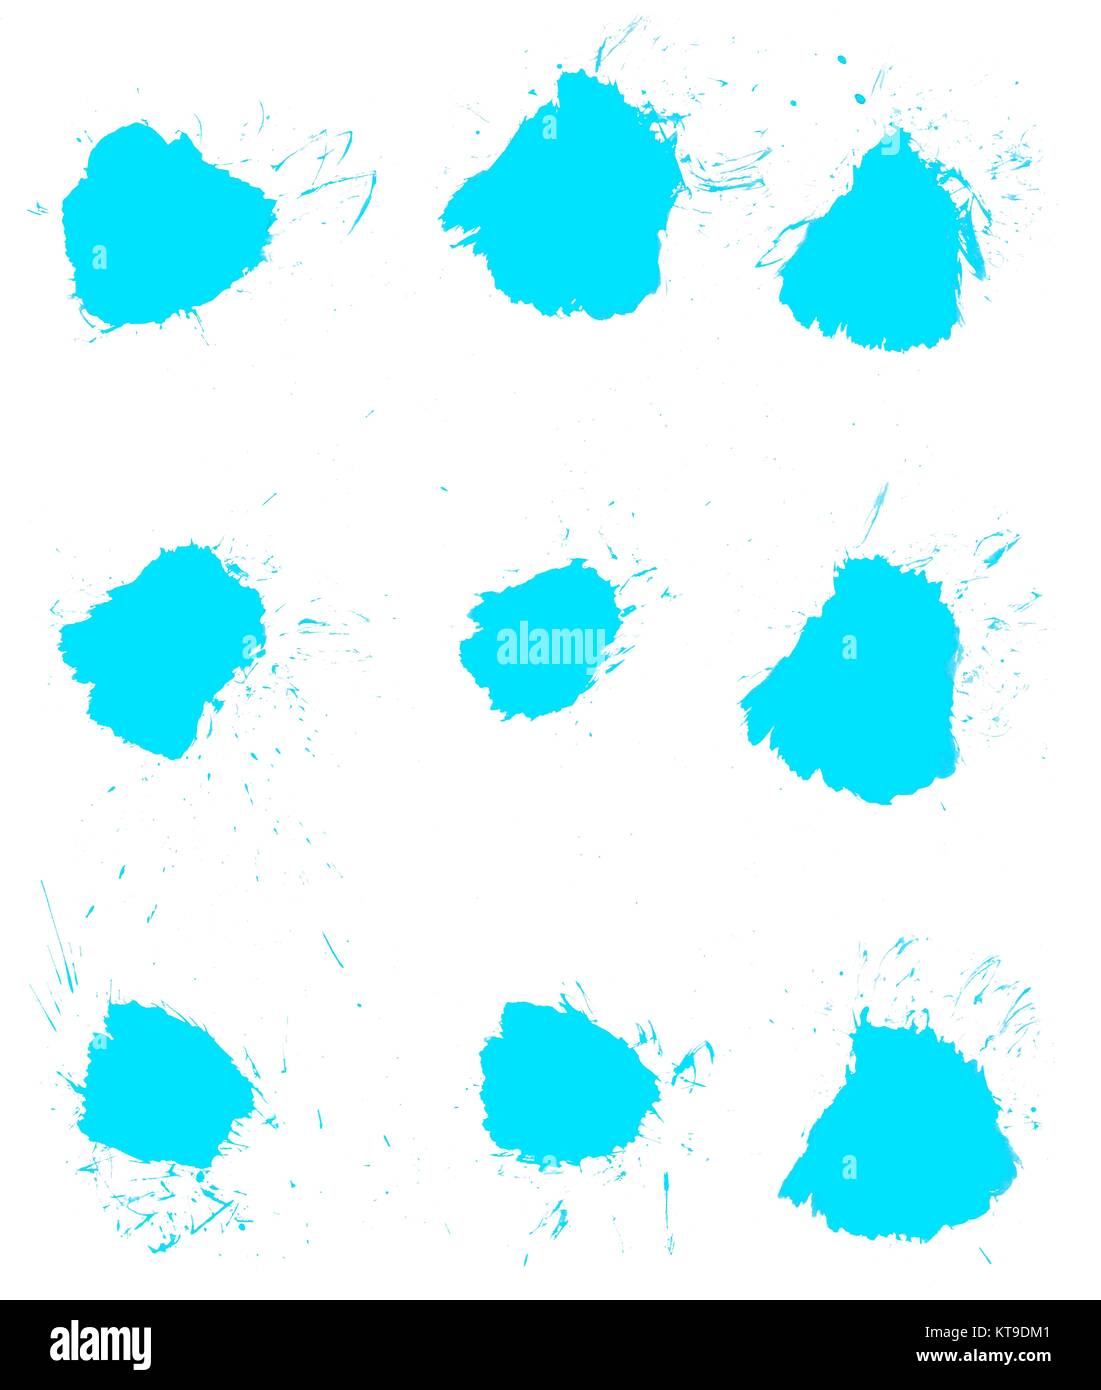 Sammlung von 9 isolierten unordentlichen hellblauen Flecken mit Klecksen und Farbspritzern Stock Photo